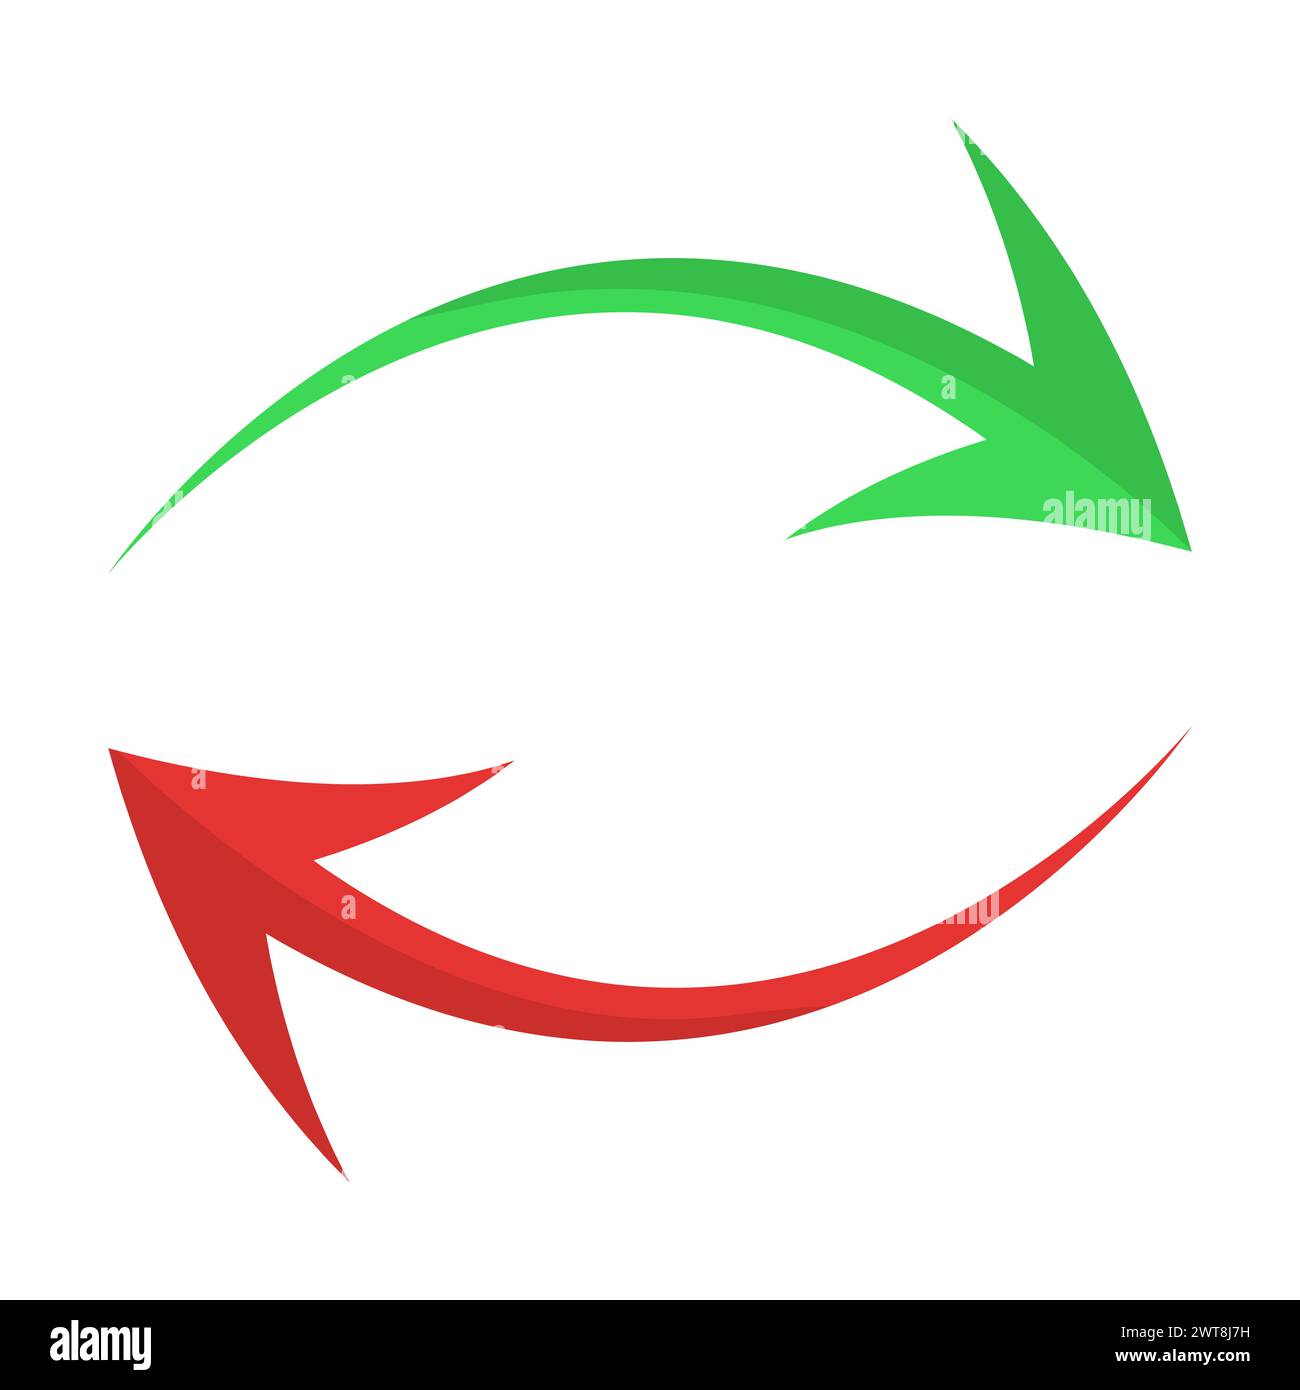 Flèches courbes vertes et rouges sous forme d'illustration vectorielle de recyclage Illustration de Vecteur